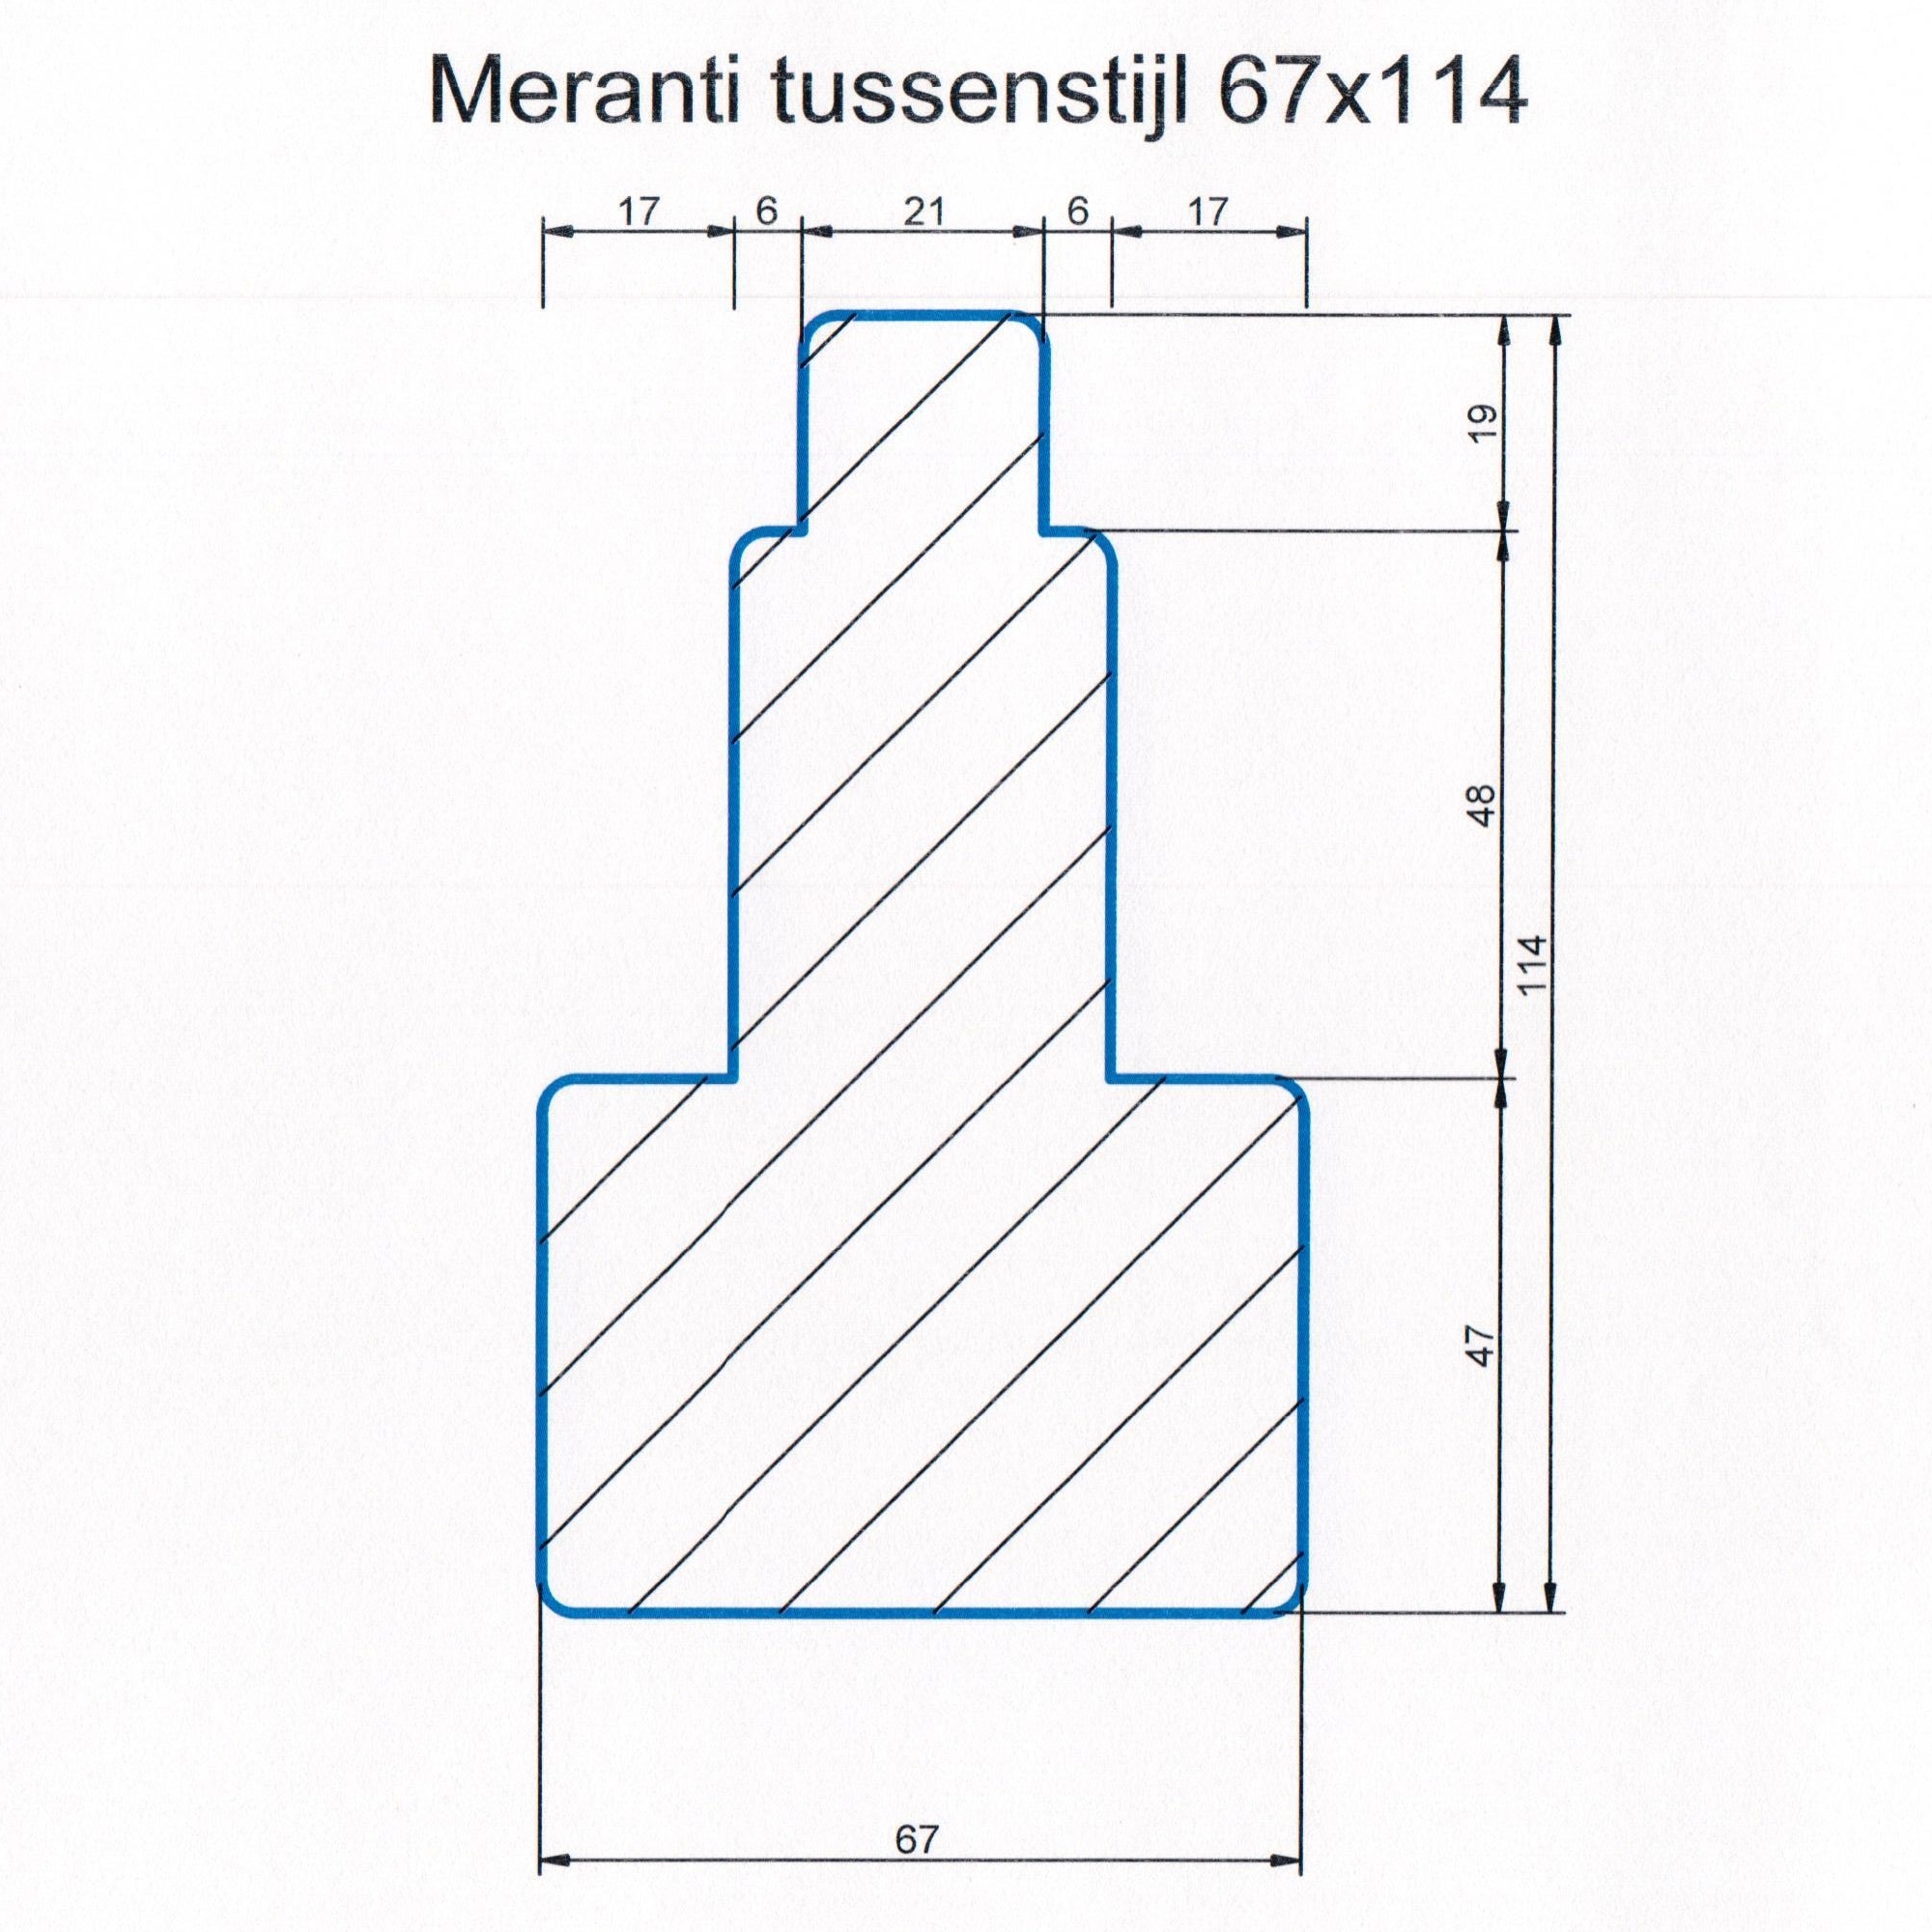 M1 Meranti 67x114 Kozijnhout Tussenstijl